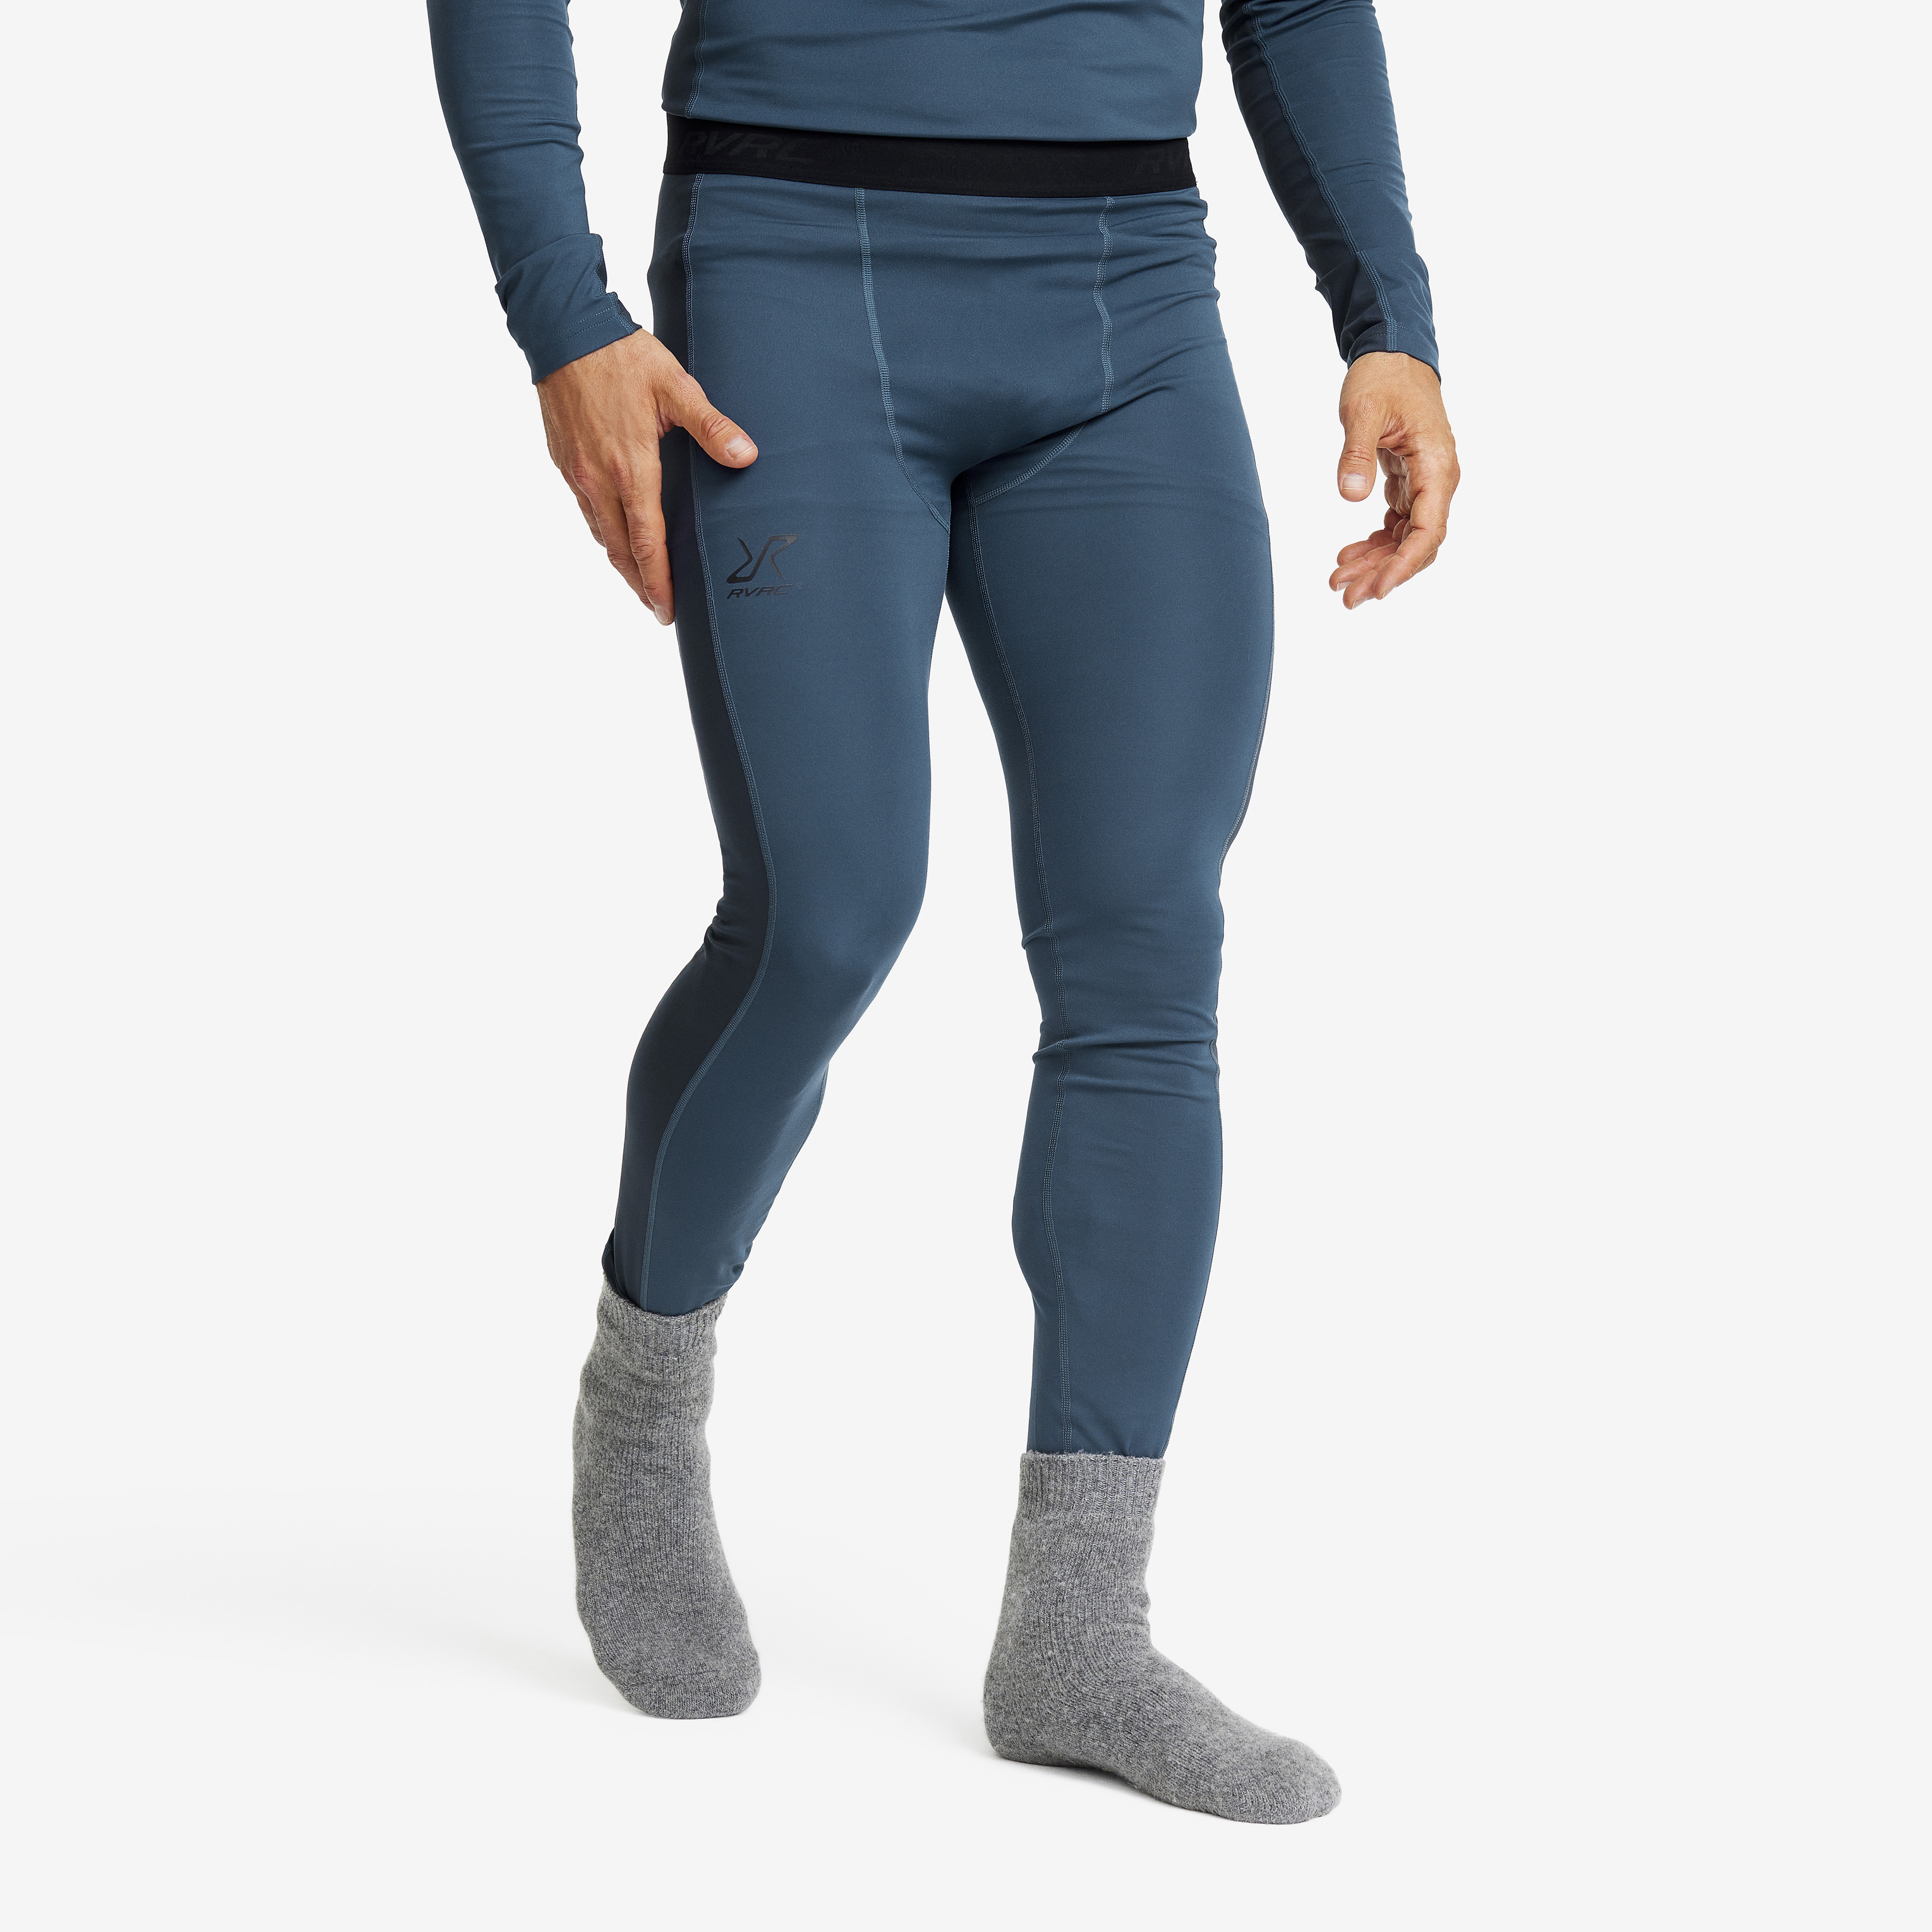 Sous-vêtement thermique pour homme, couche de base d'hiver de compression  Warm Gear Sport Set